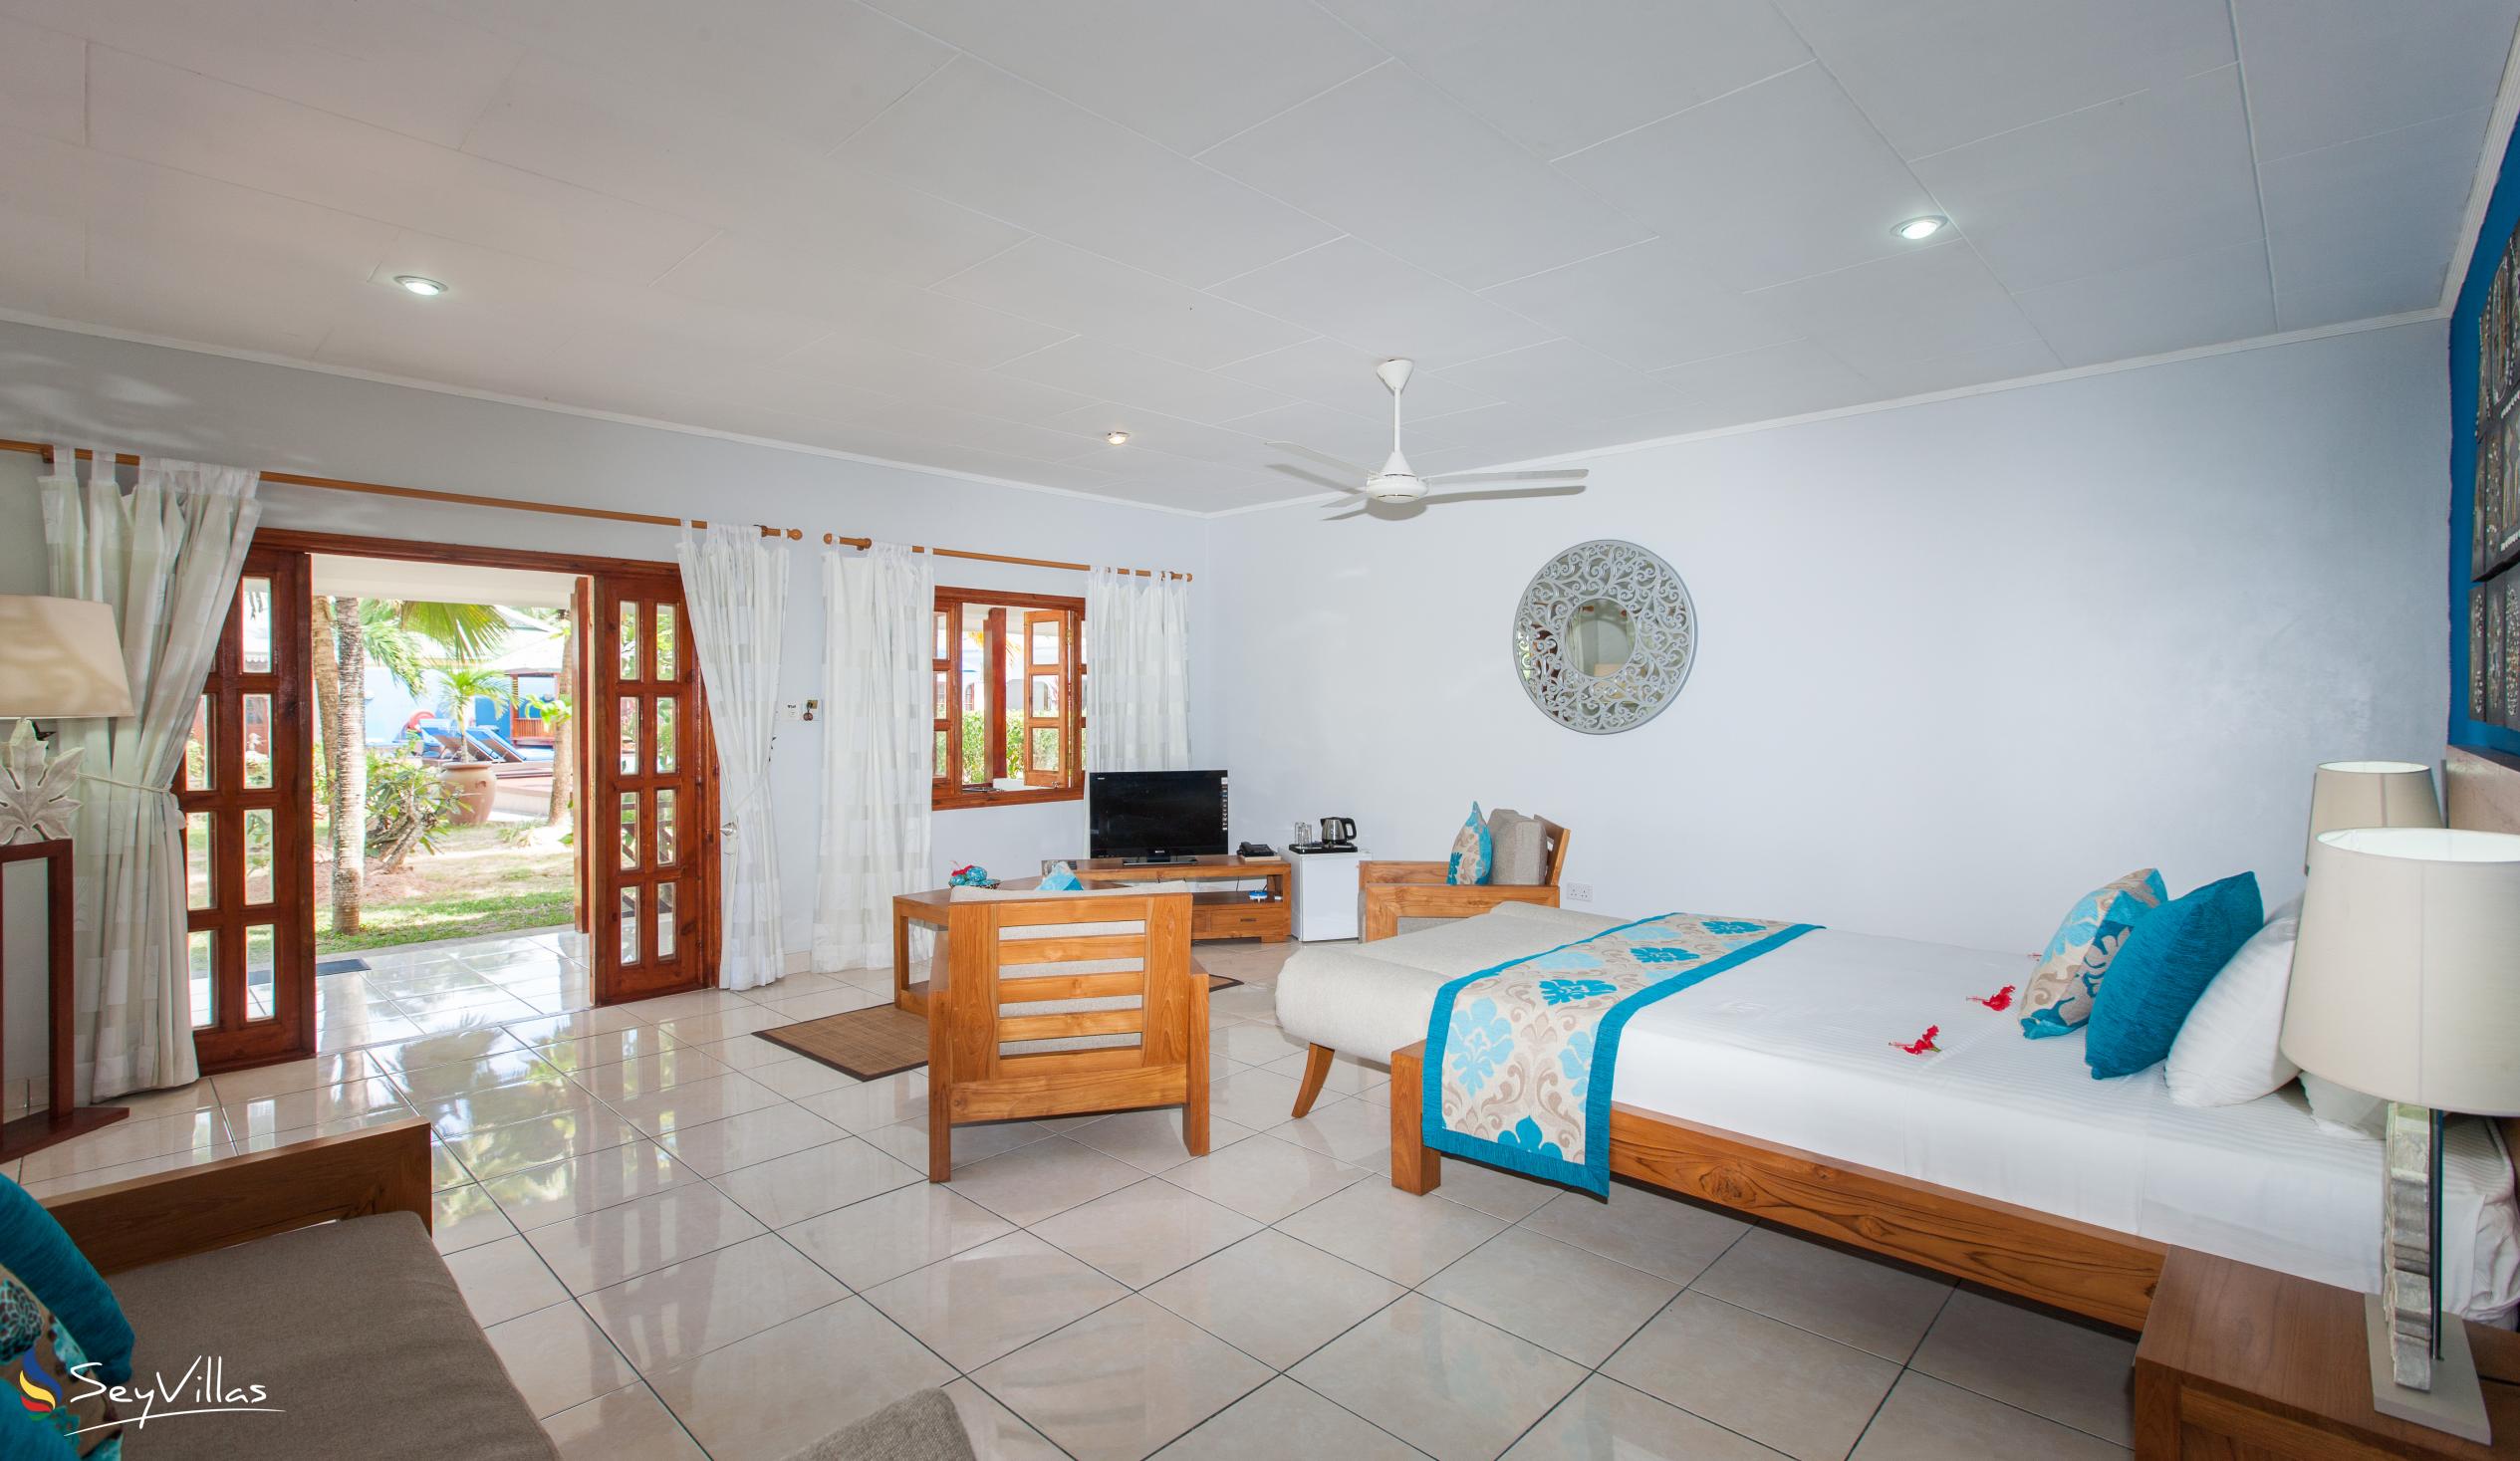 Foto 36: Villas de Mer - Junior Suite - Praslin (Seychelles)